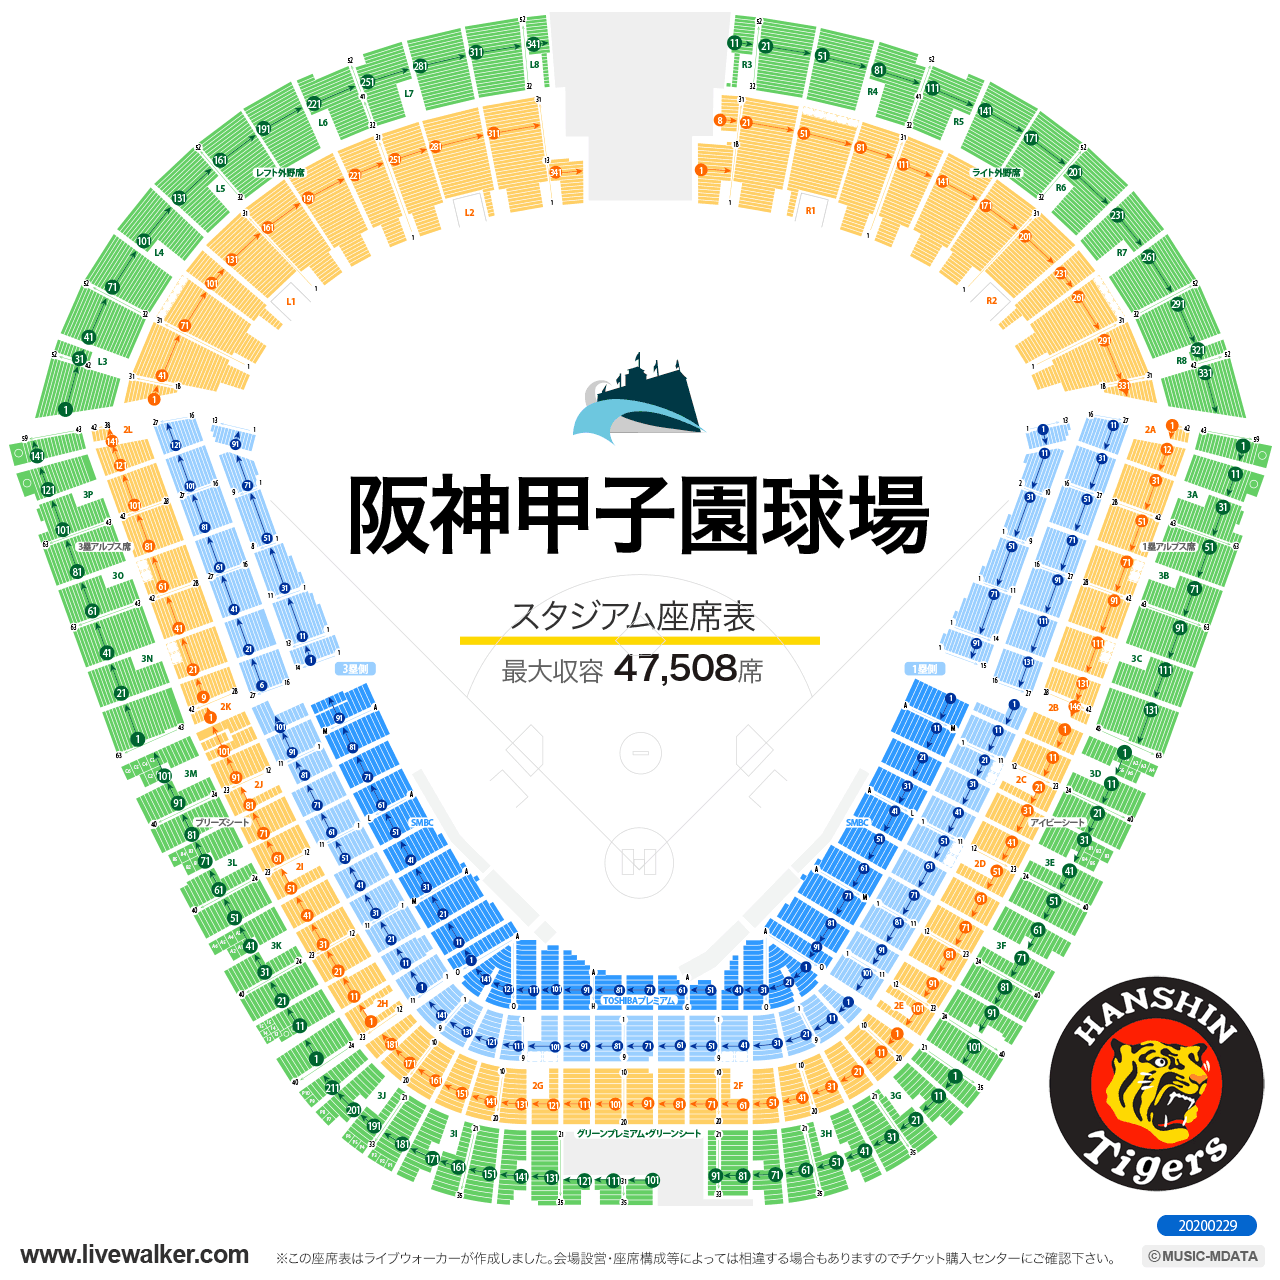 阪神甲子園球場スタジアムの座席表